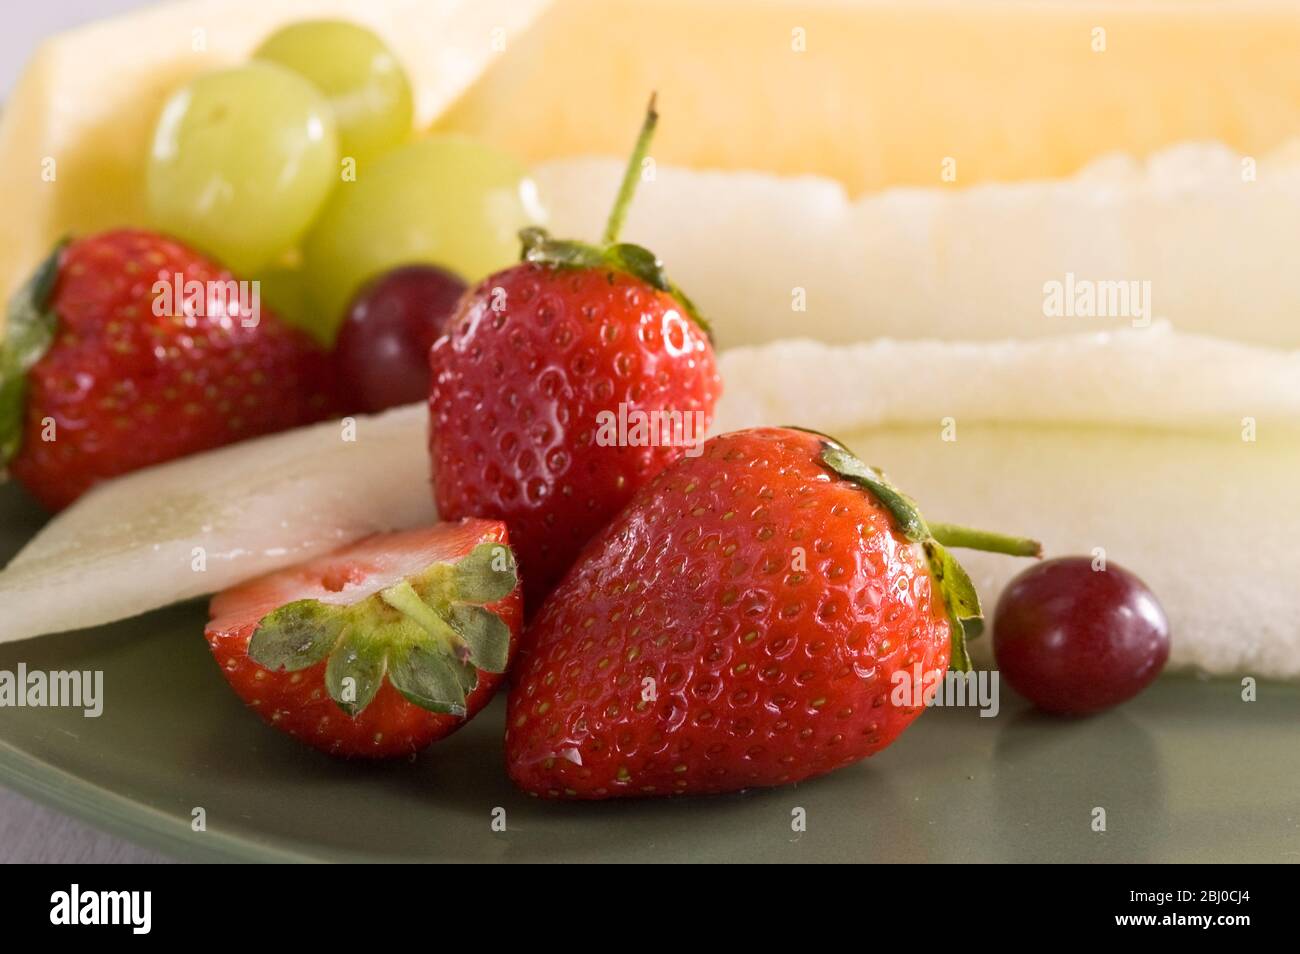 Salade de fruits frais de fraises, raisins et tranches de melon et d'ananas sur la plaque verte. - Banque D'Images